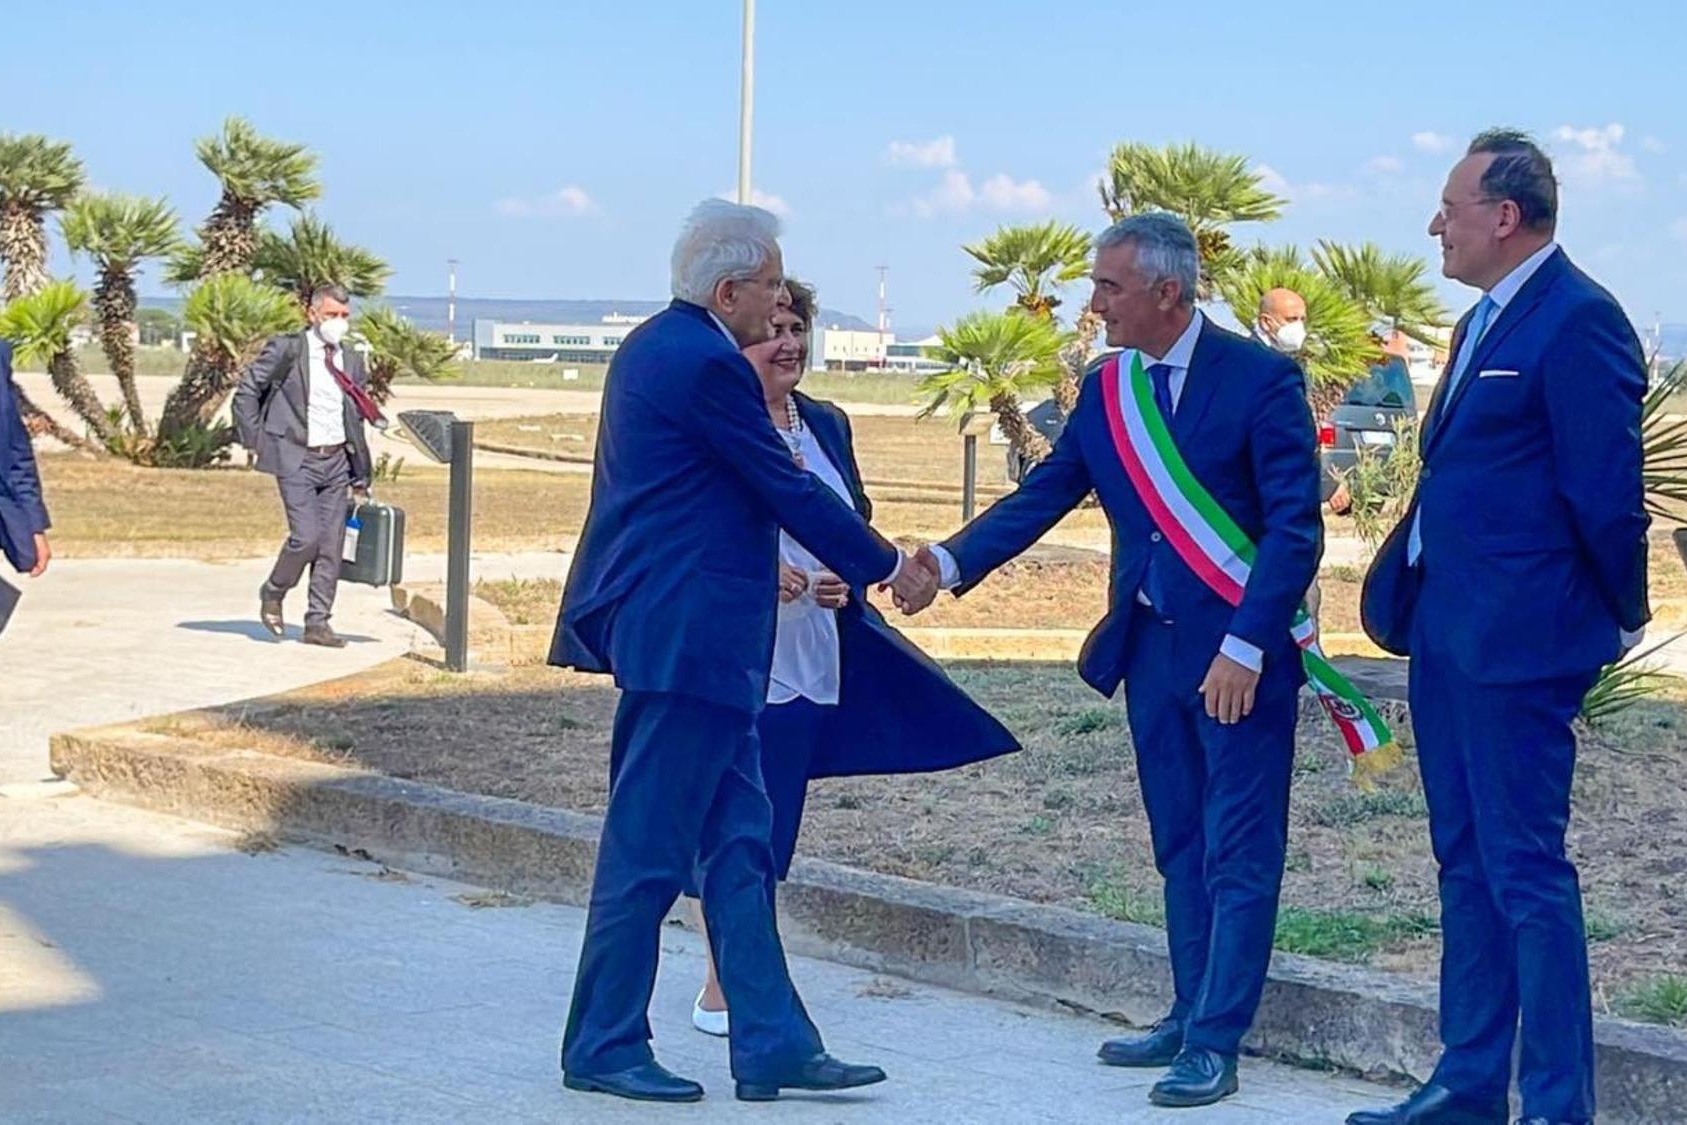 Il Presidente della Repubblica, Sergio Mattarella, accolto dal Sindaco di Alghero, Mario Conoci, al suo arrivo in Sardegna per le vacanze (foto Ansa)